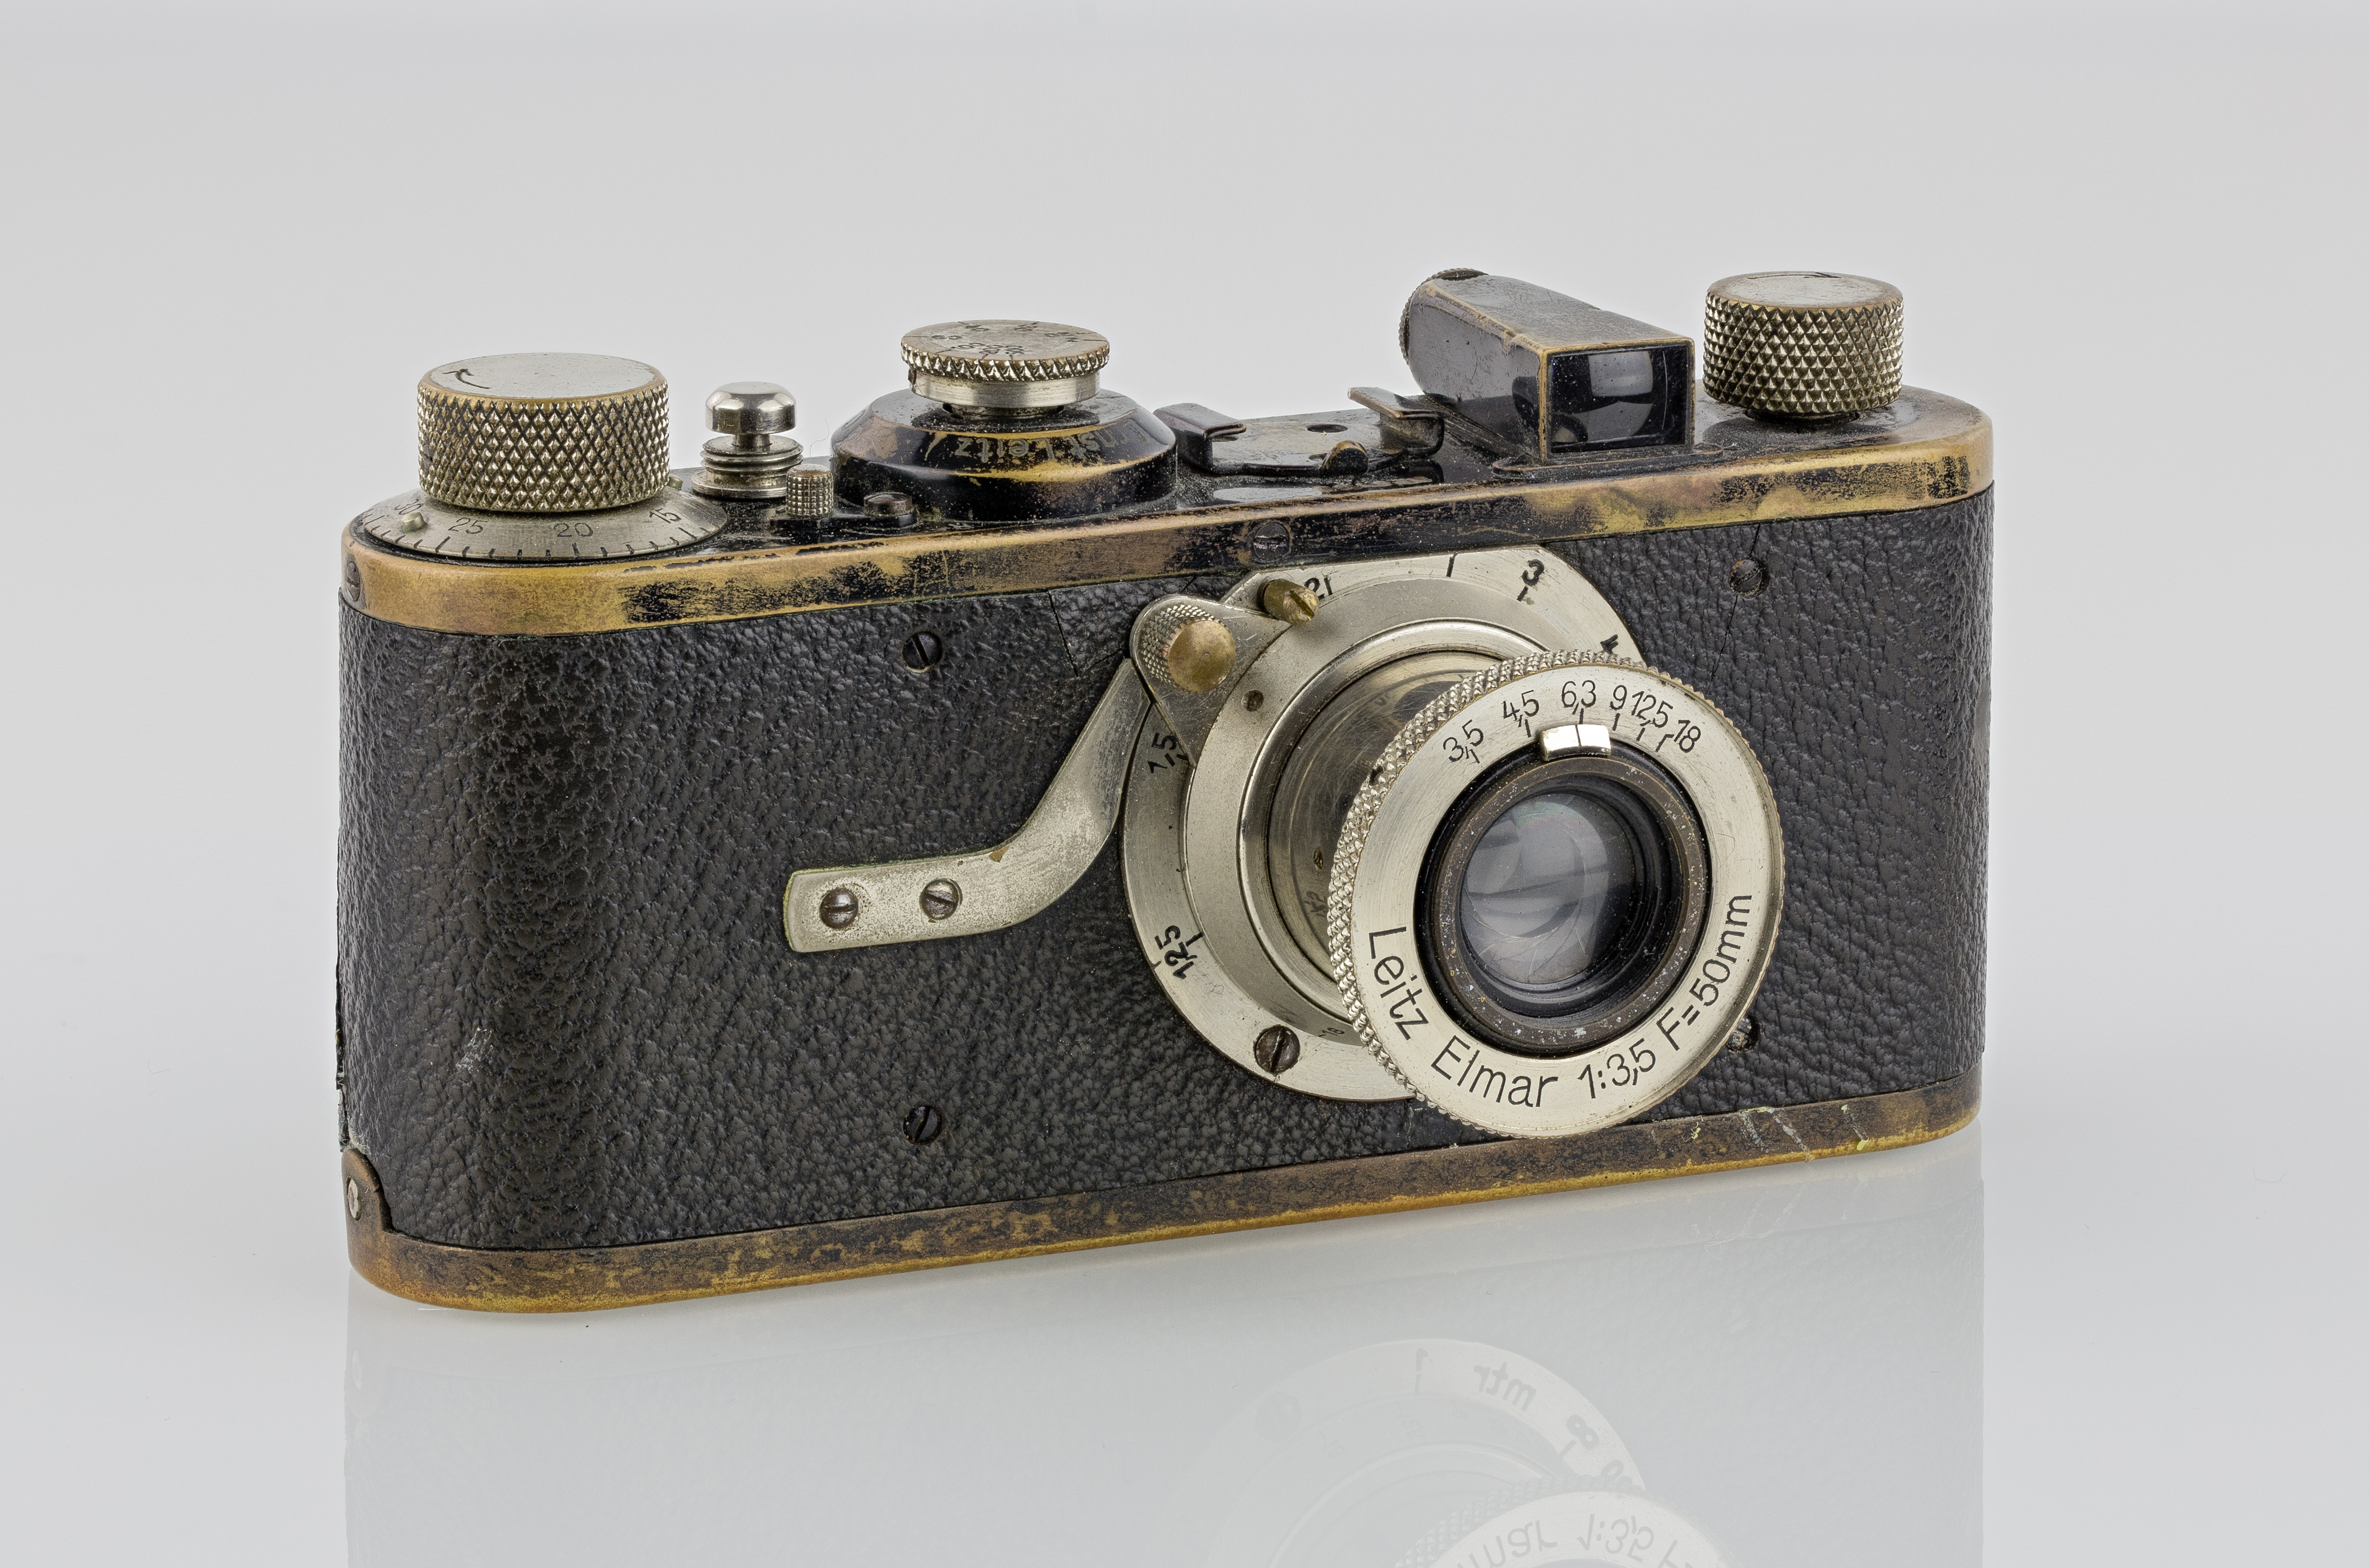 A alemã Leica I, de 1927, foi revolucionária ao usar filme 35 mm produzido inicialmente para cinema pela americana Kodak